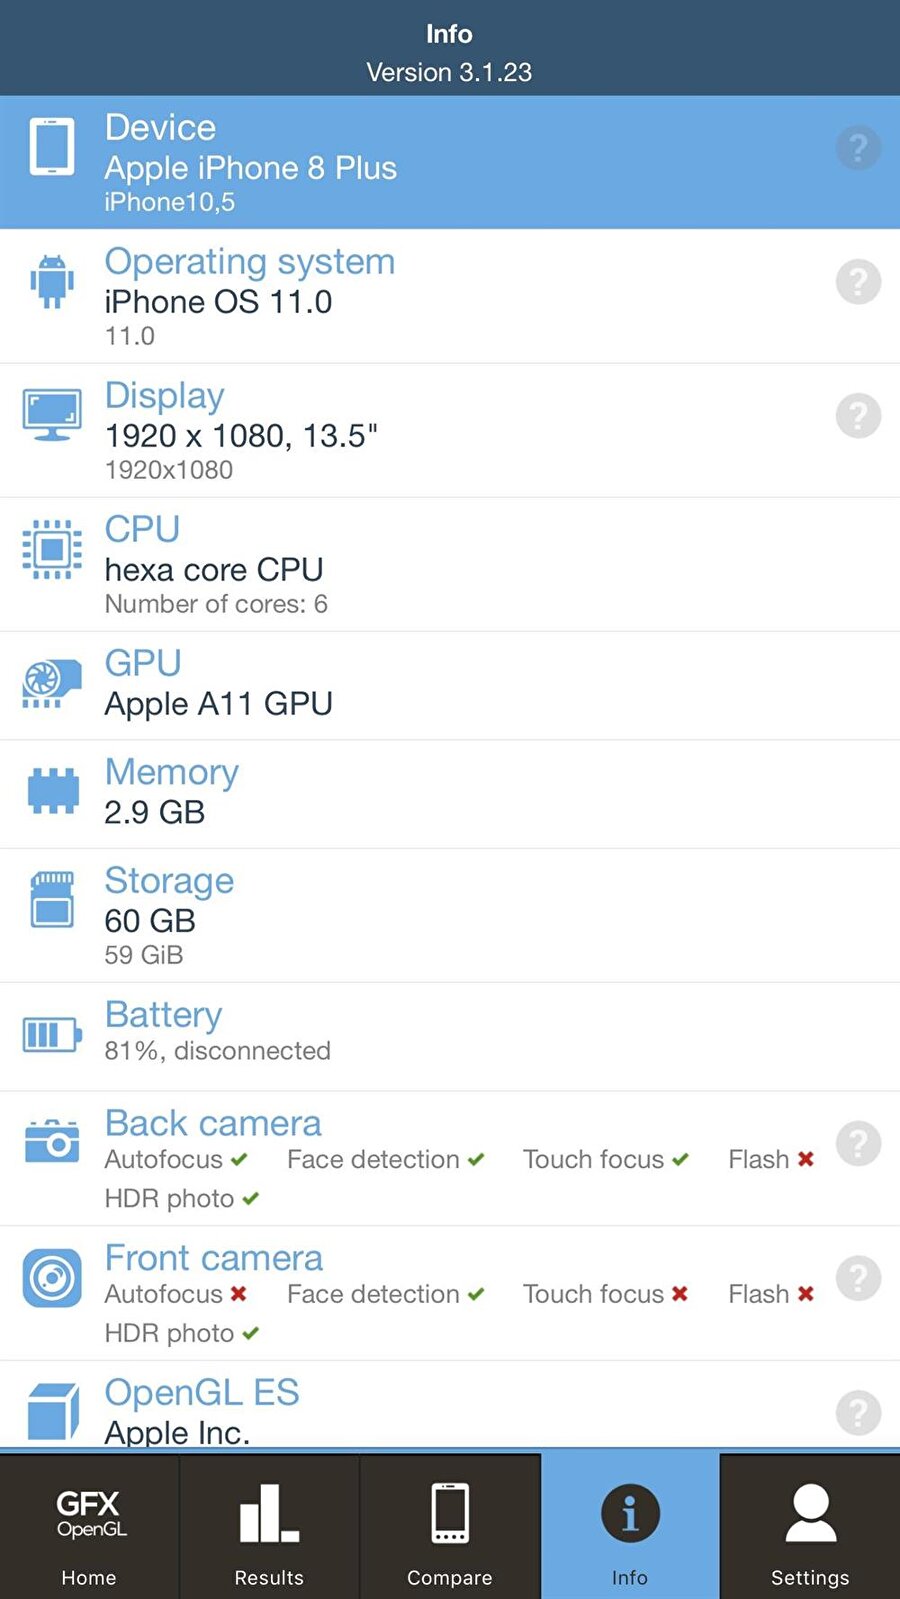 iPhone 8 Plus'taki bileşenlerin tüm detayları GeekBench uygulamasında görülebiliyor. 